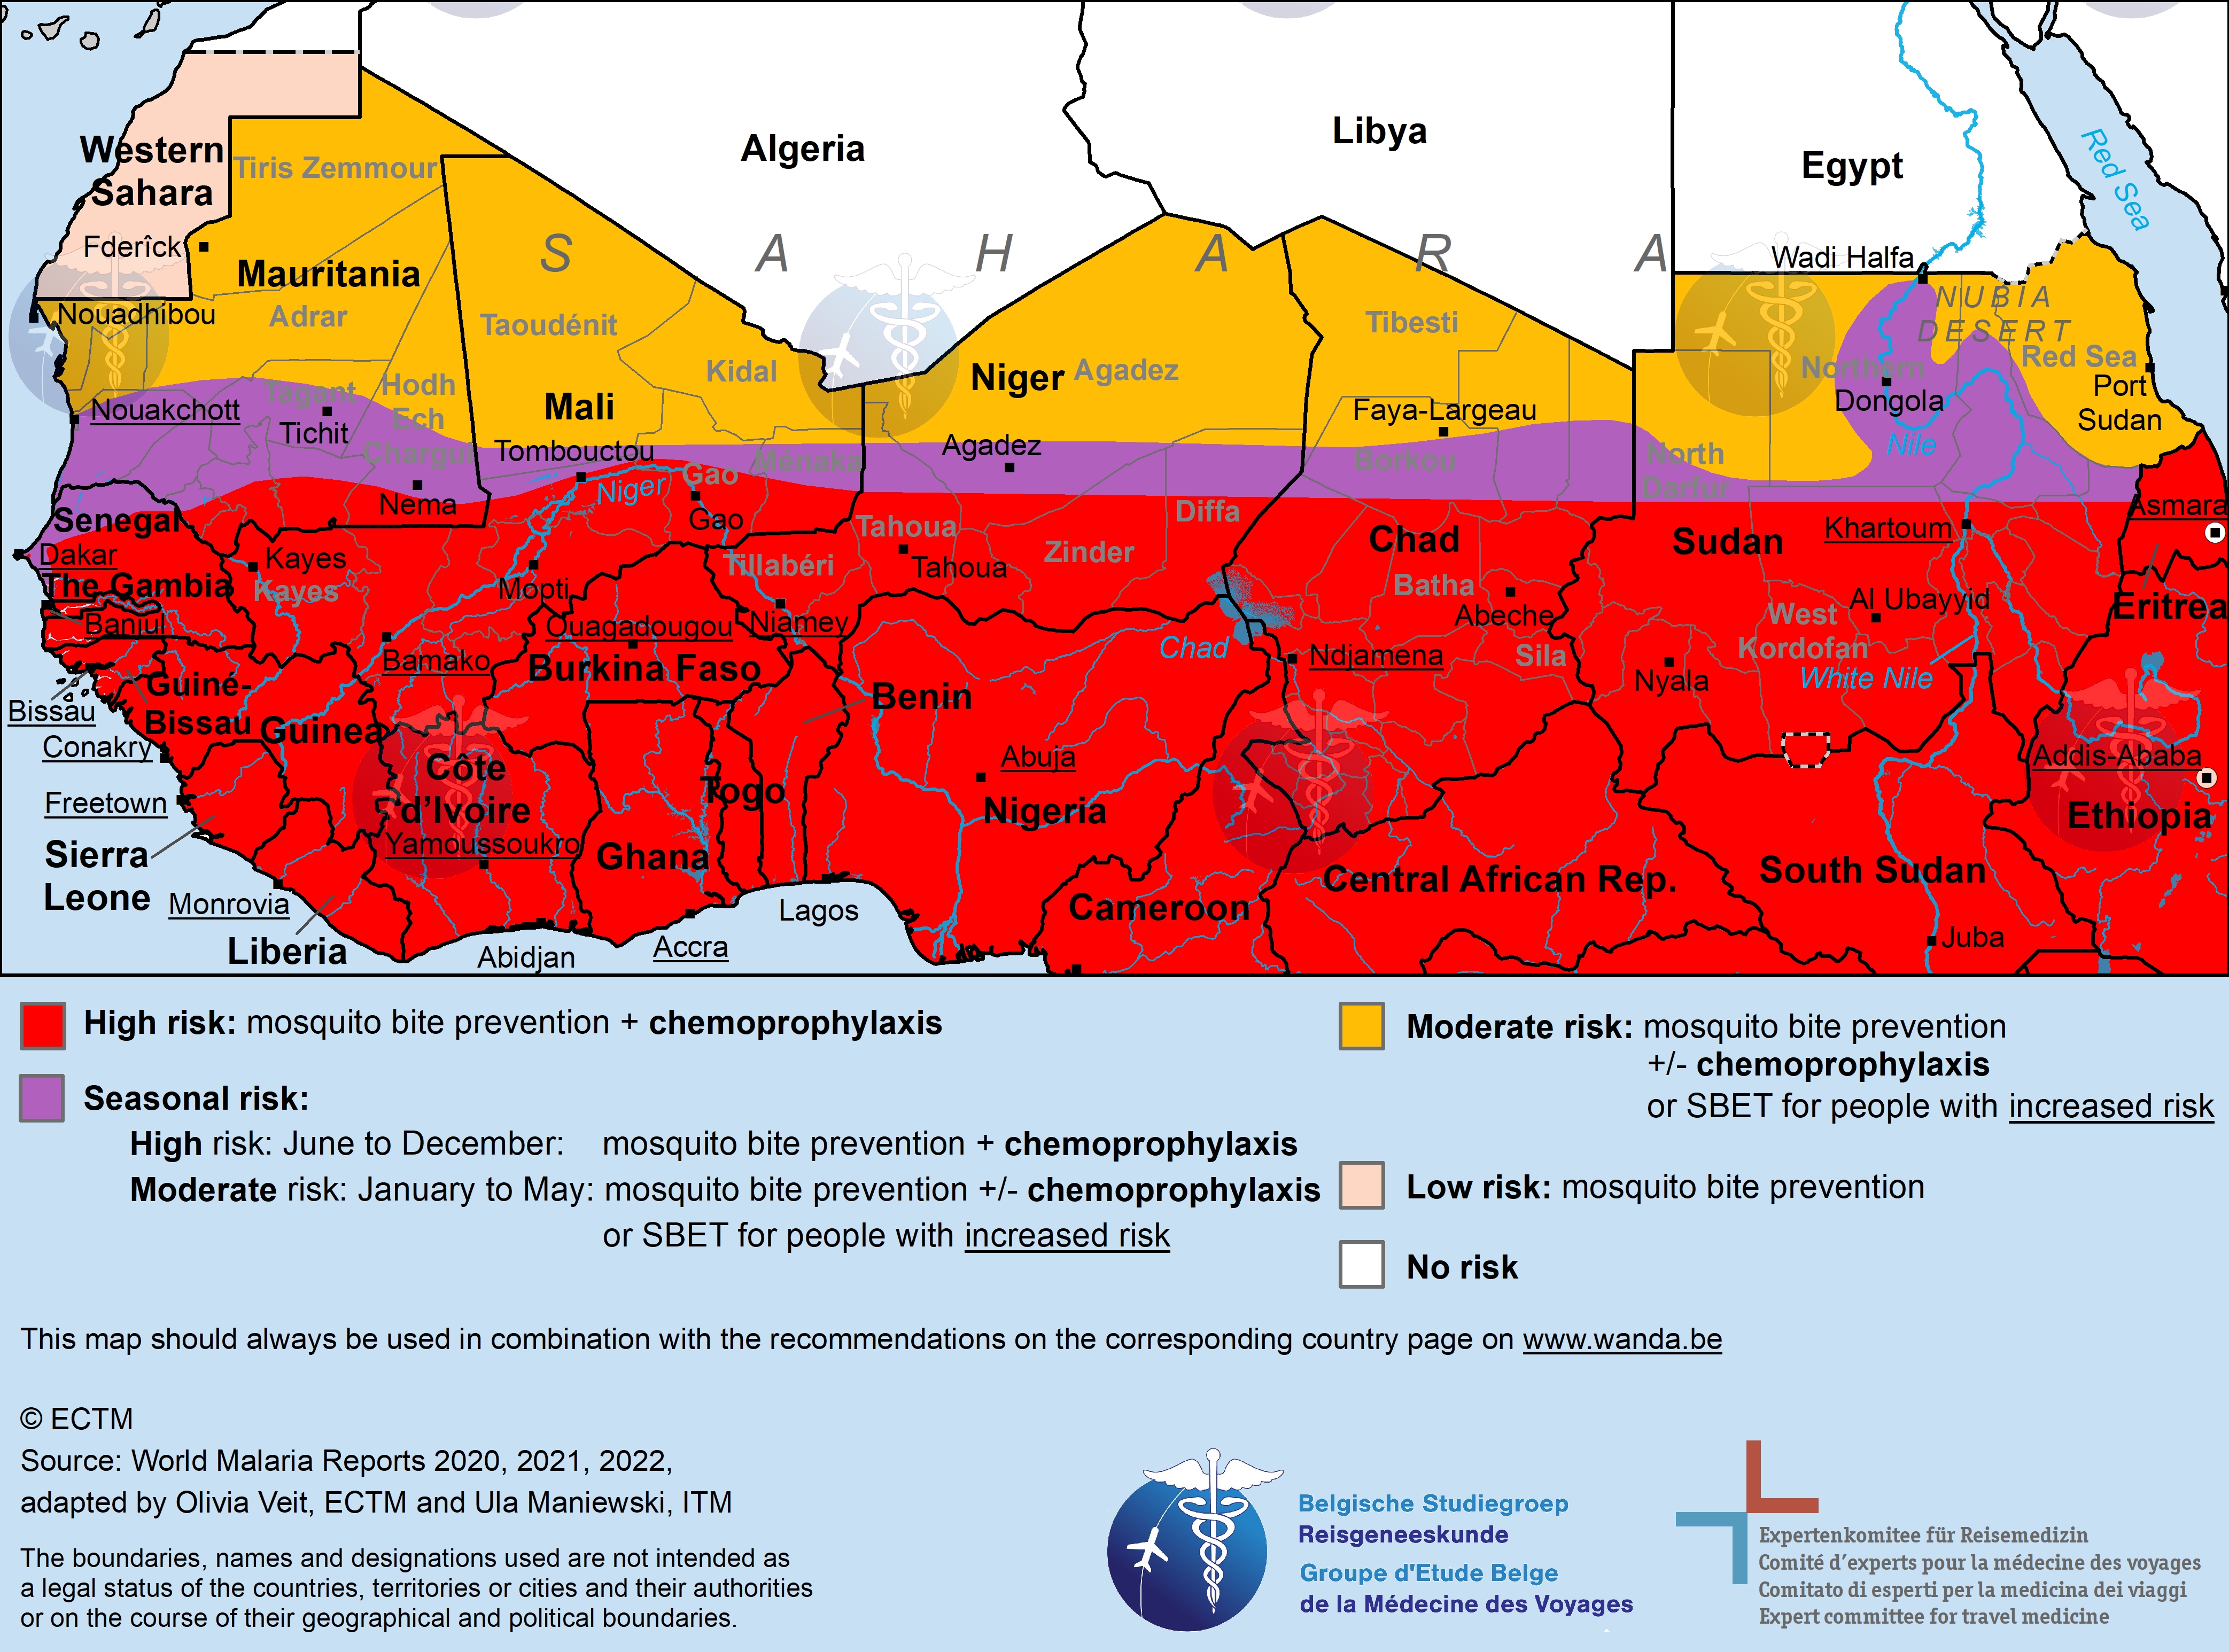 Kaart van Sahel met malaria-risicogebieden